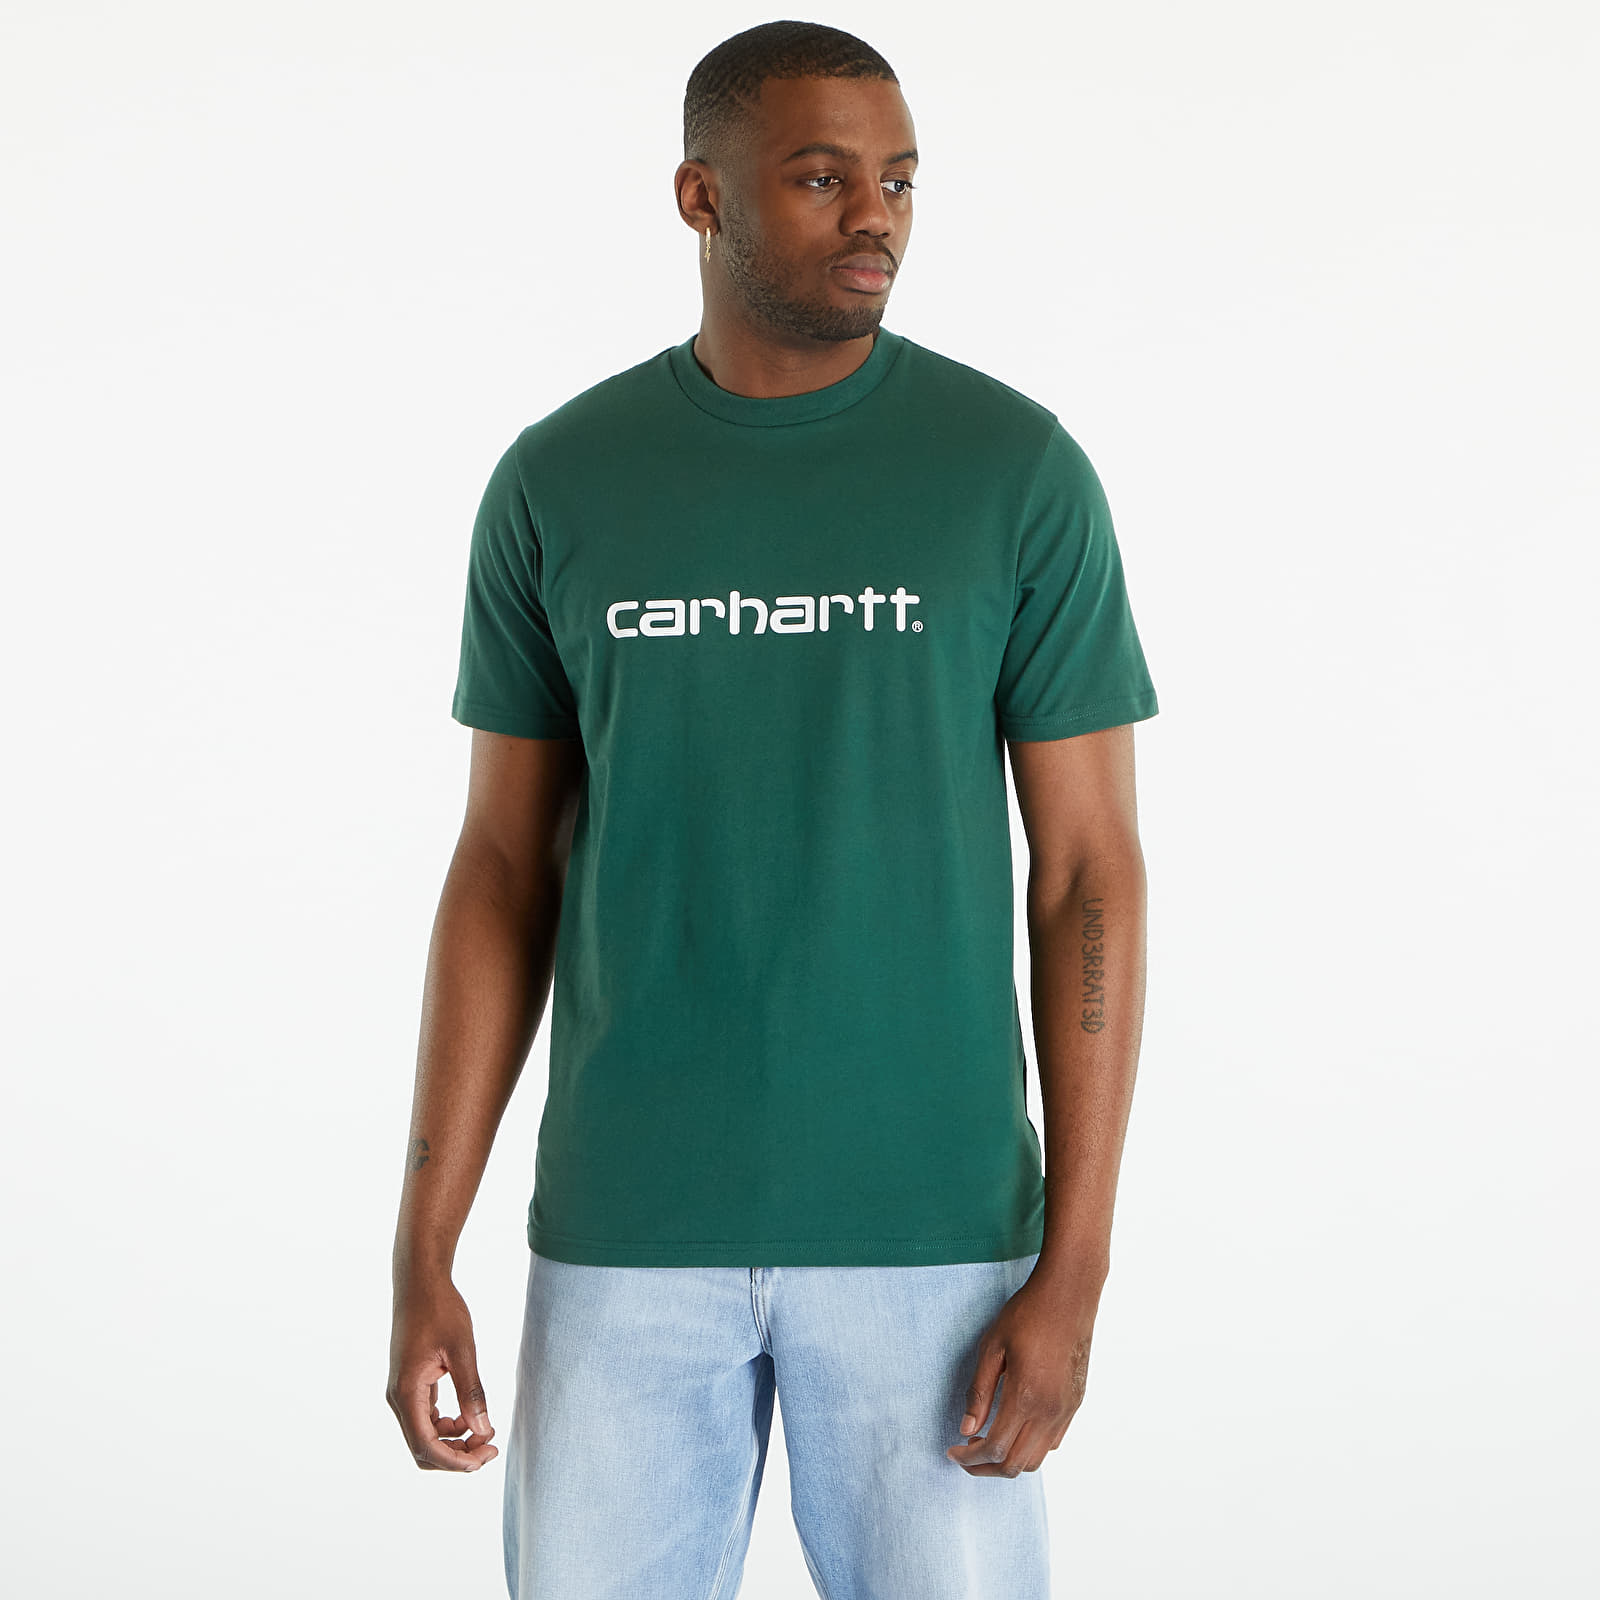  Μπλούζες Carhartt WIP Script Short Sleeve T-Shirt UNISEX Treehouse/ White